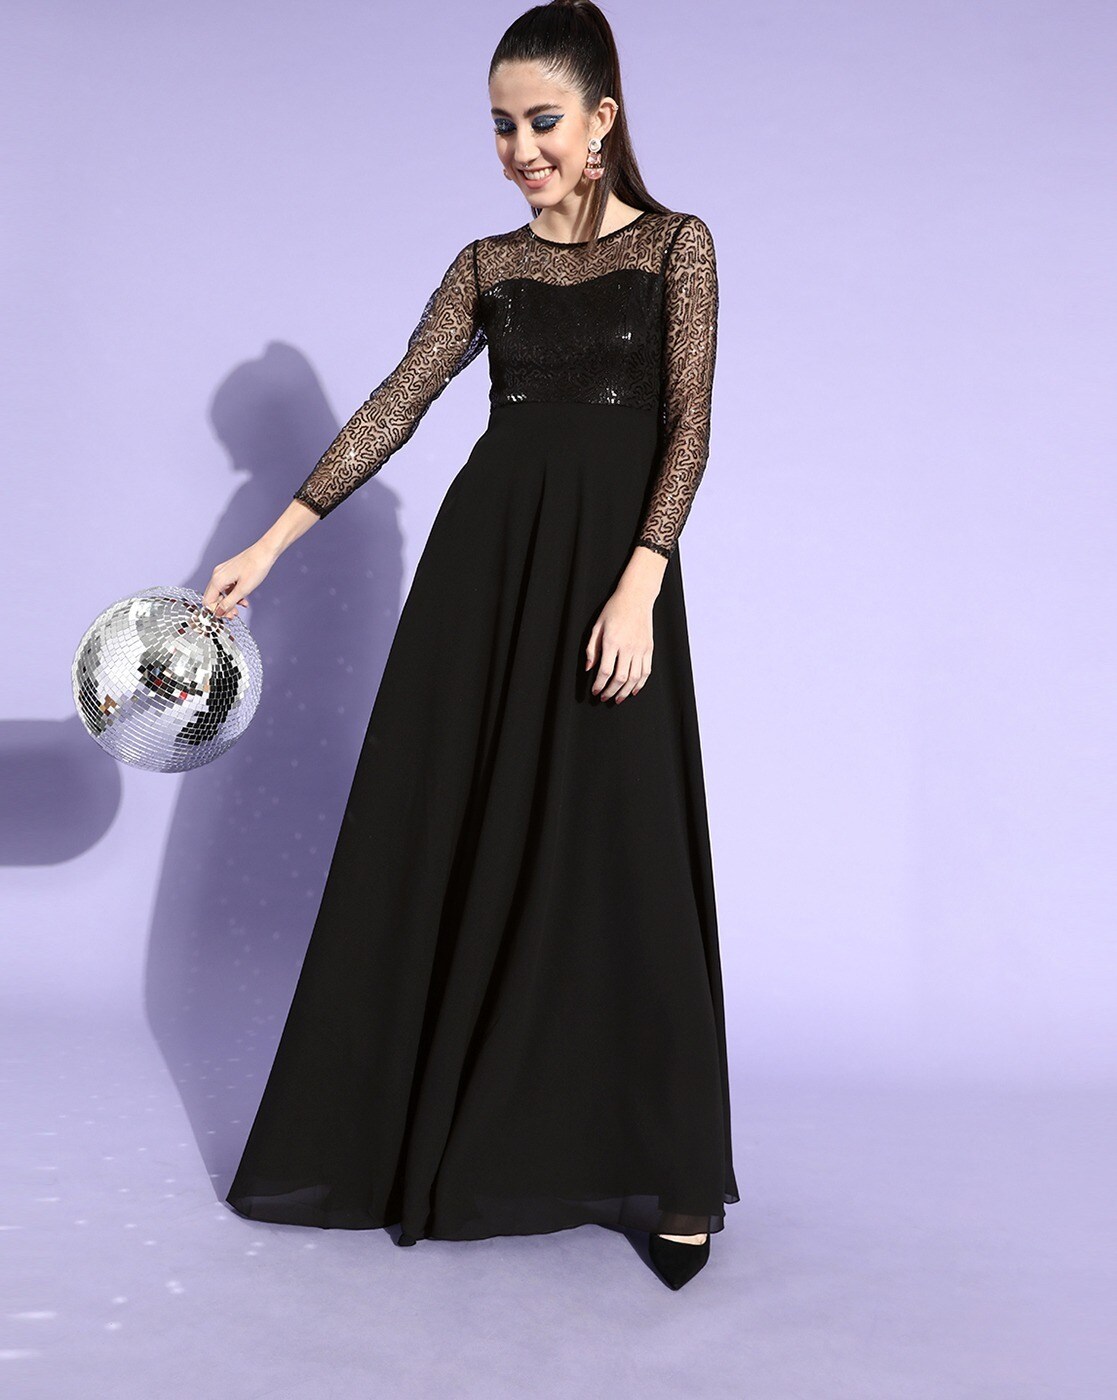 Buy Hunkemoller Black Lace Robe for Women's Online @ Tata CLiQ